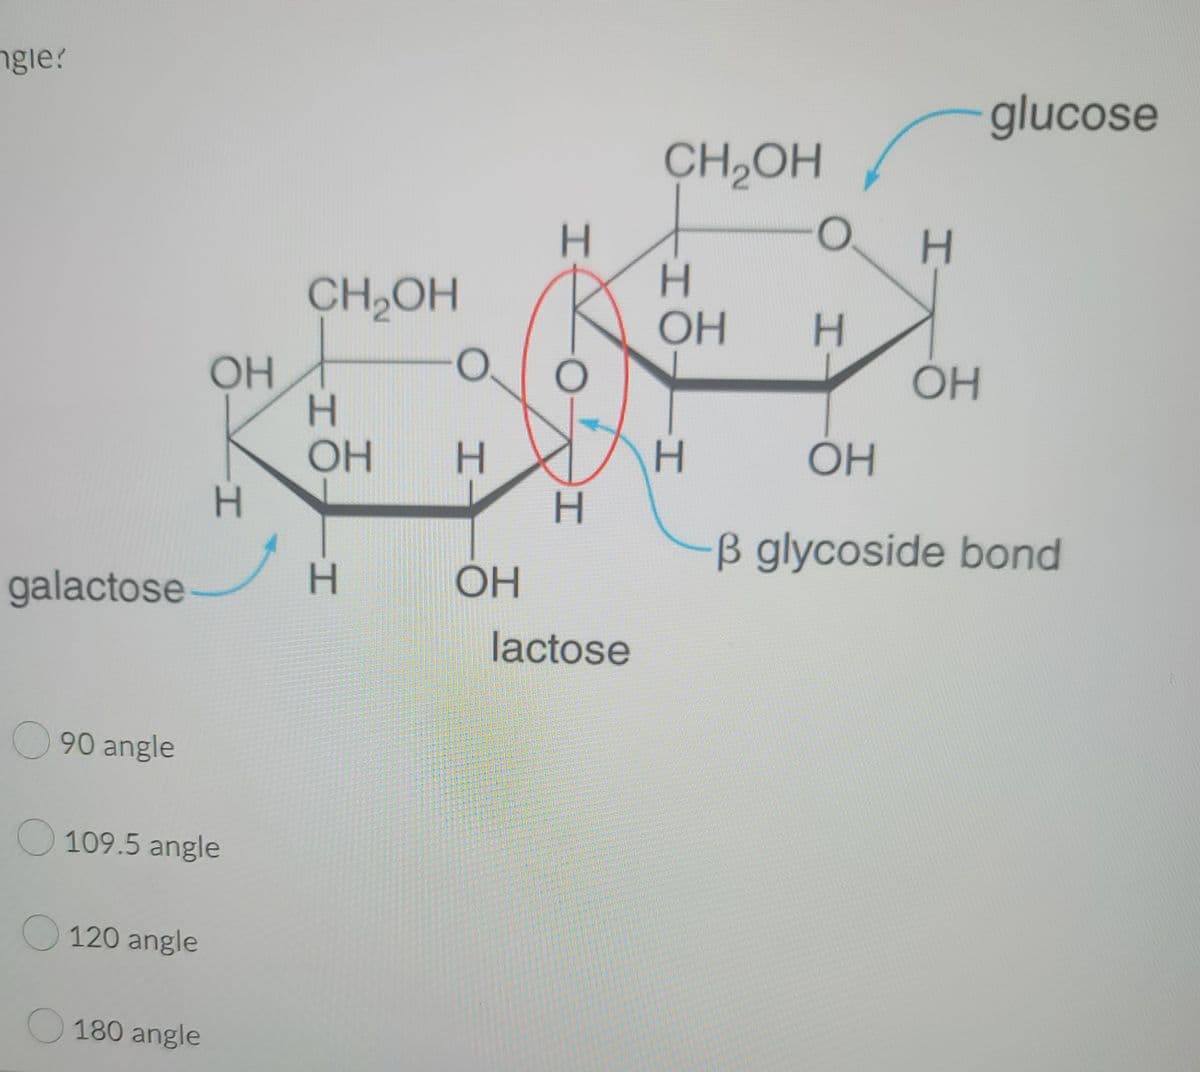 gle?
galactose
90 angle
120 angle
OH
109.5 angle
180 angle
H
CH₂OH
H
OH
H
O
H
ОН
H
O
H
lactose
CH₂OH
H
OH
H
O
H
H
OH
glucose
OH
B glycoside bond